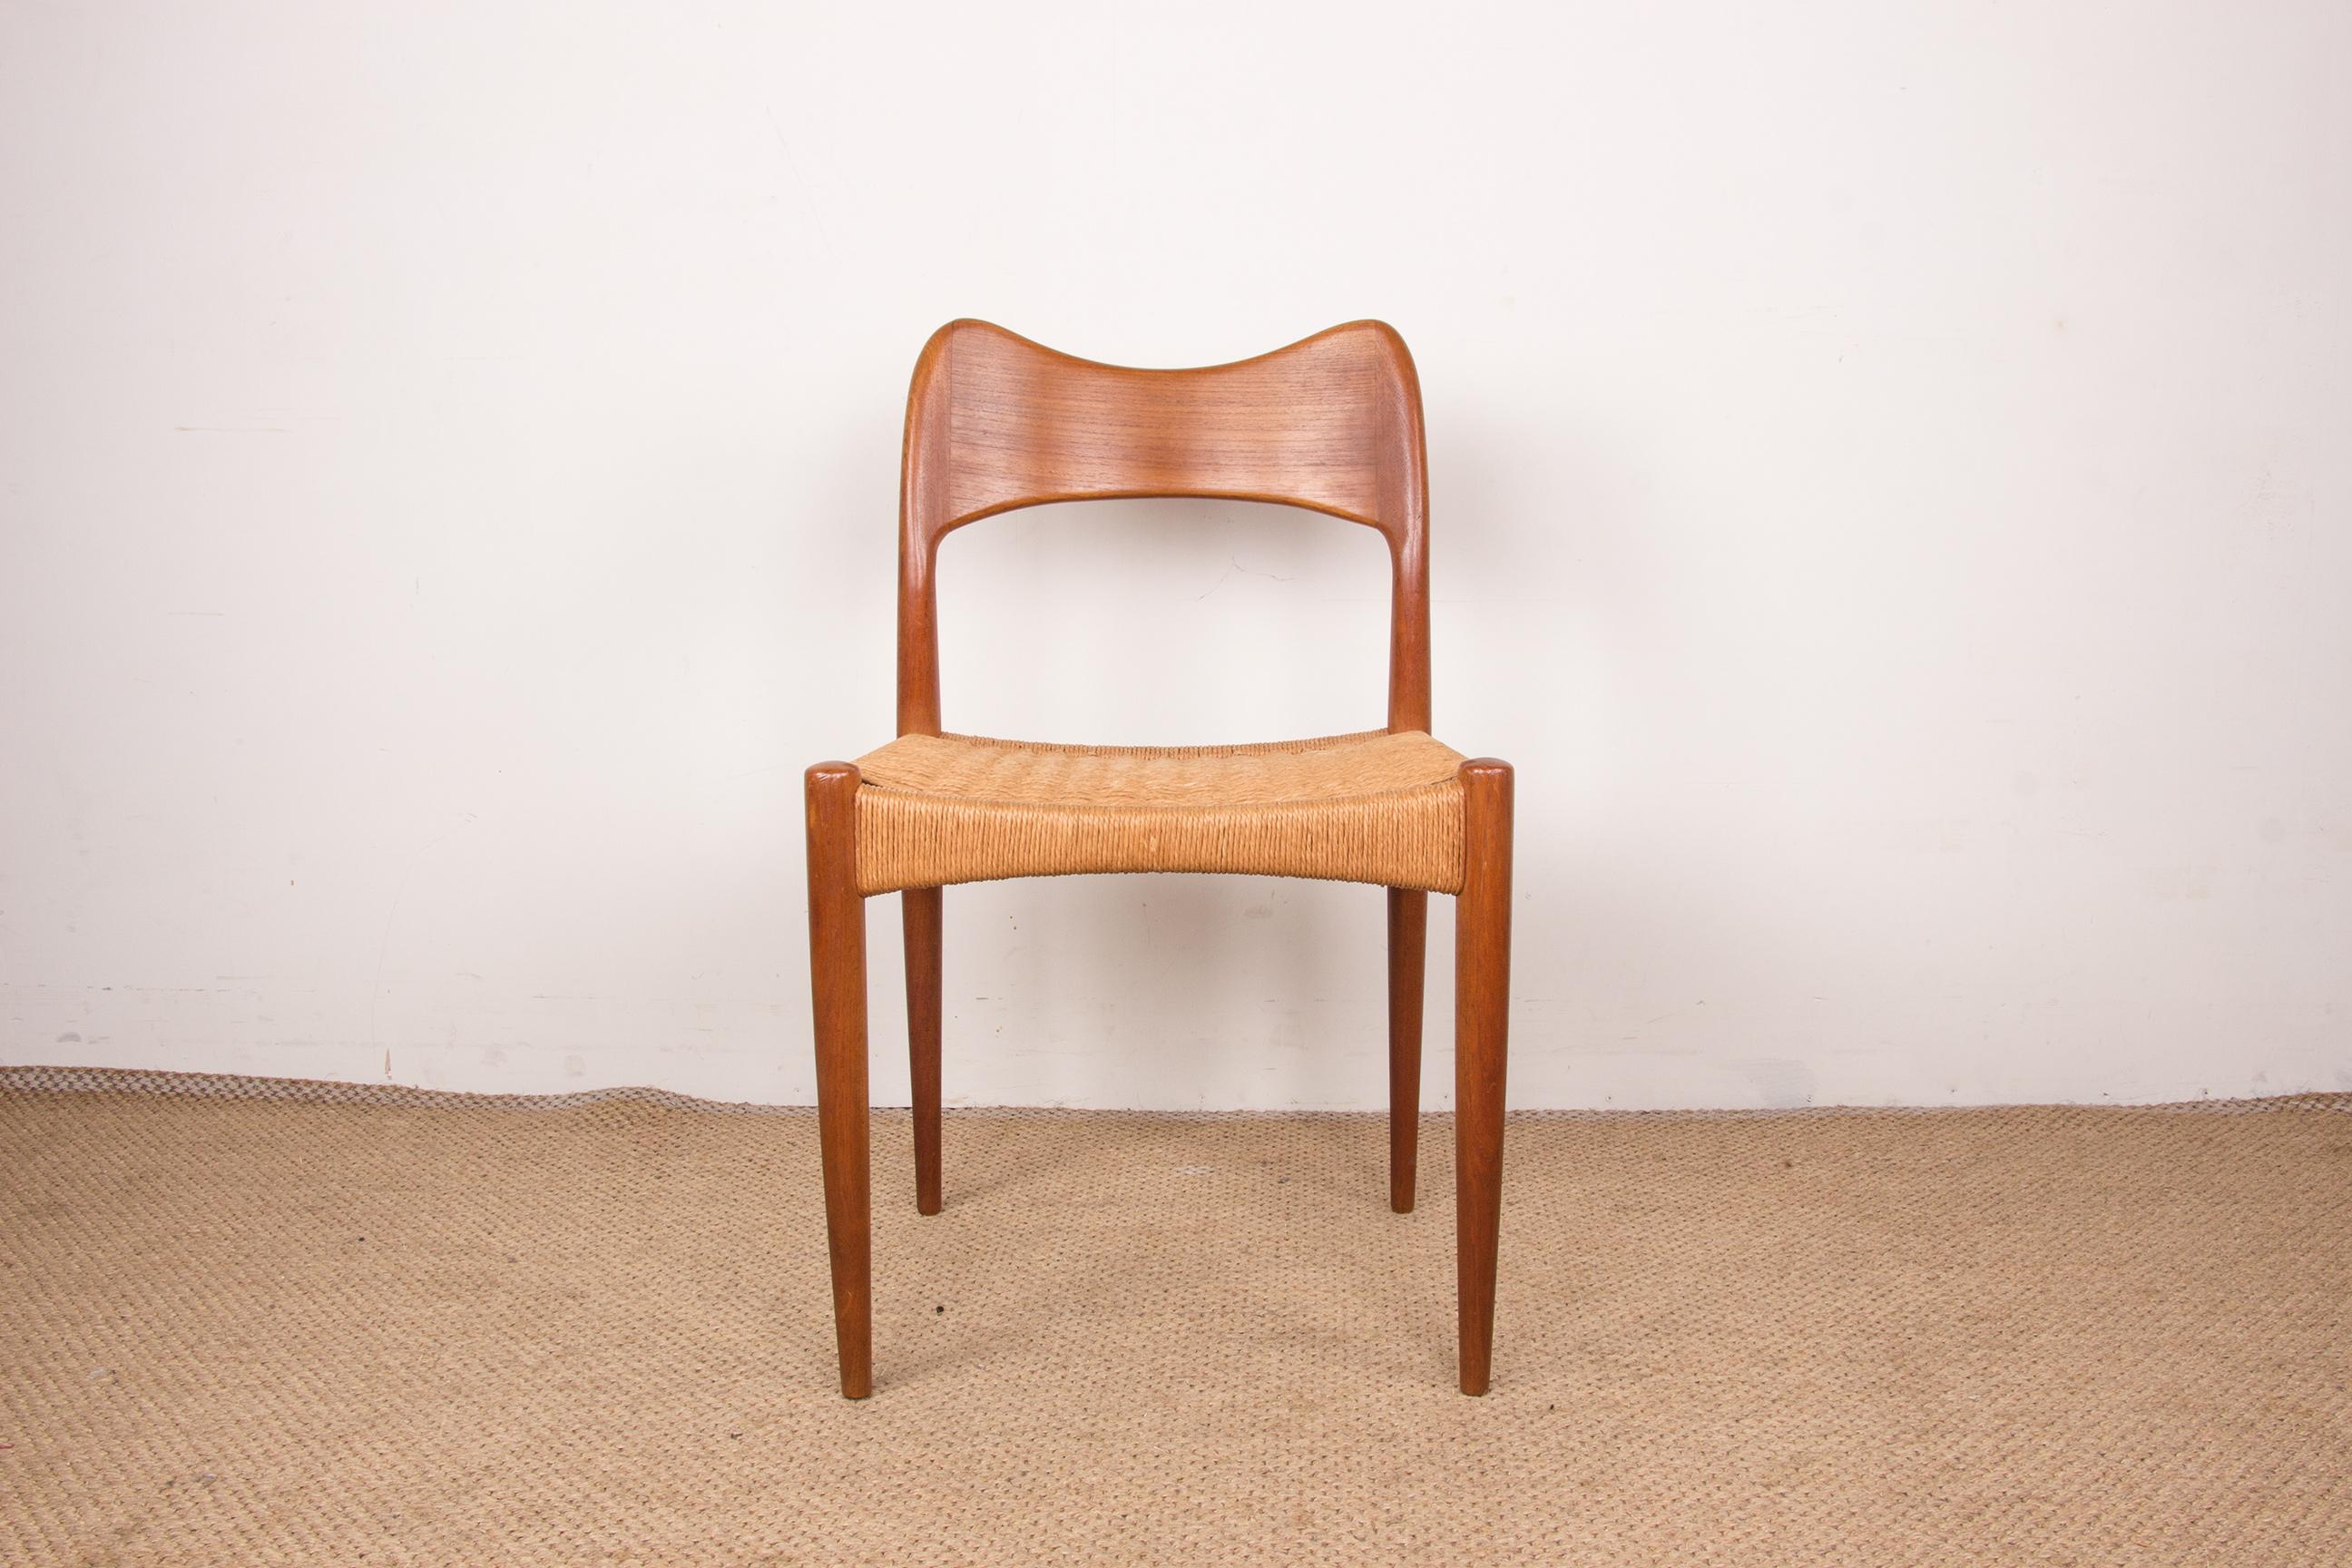 Jolies chaises scandinaves. Design/One sobre et élégant. Grand confort pour cette chaise classique de ce Designer.